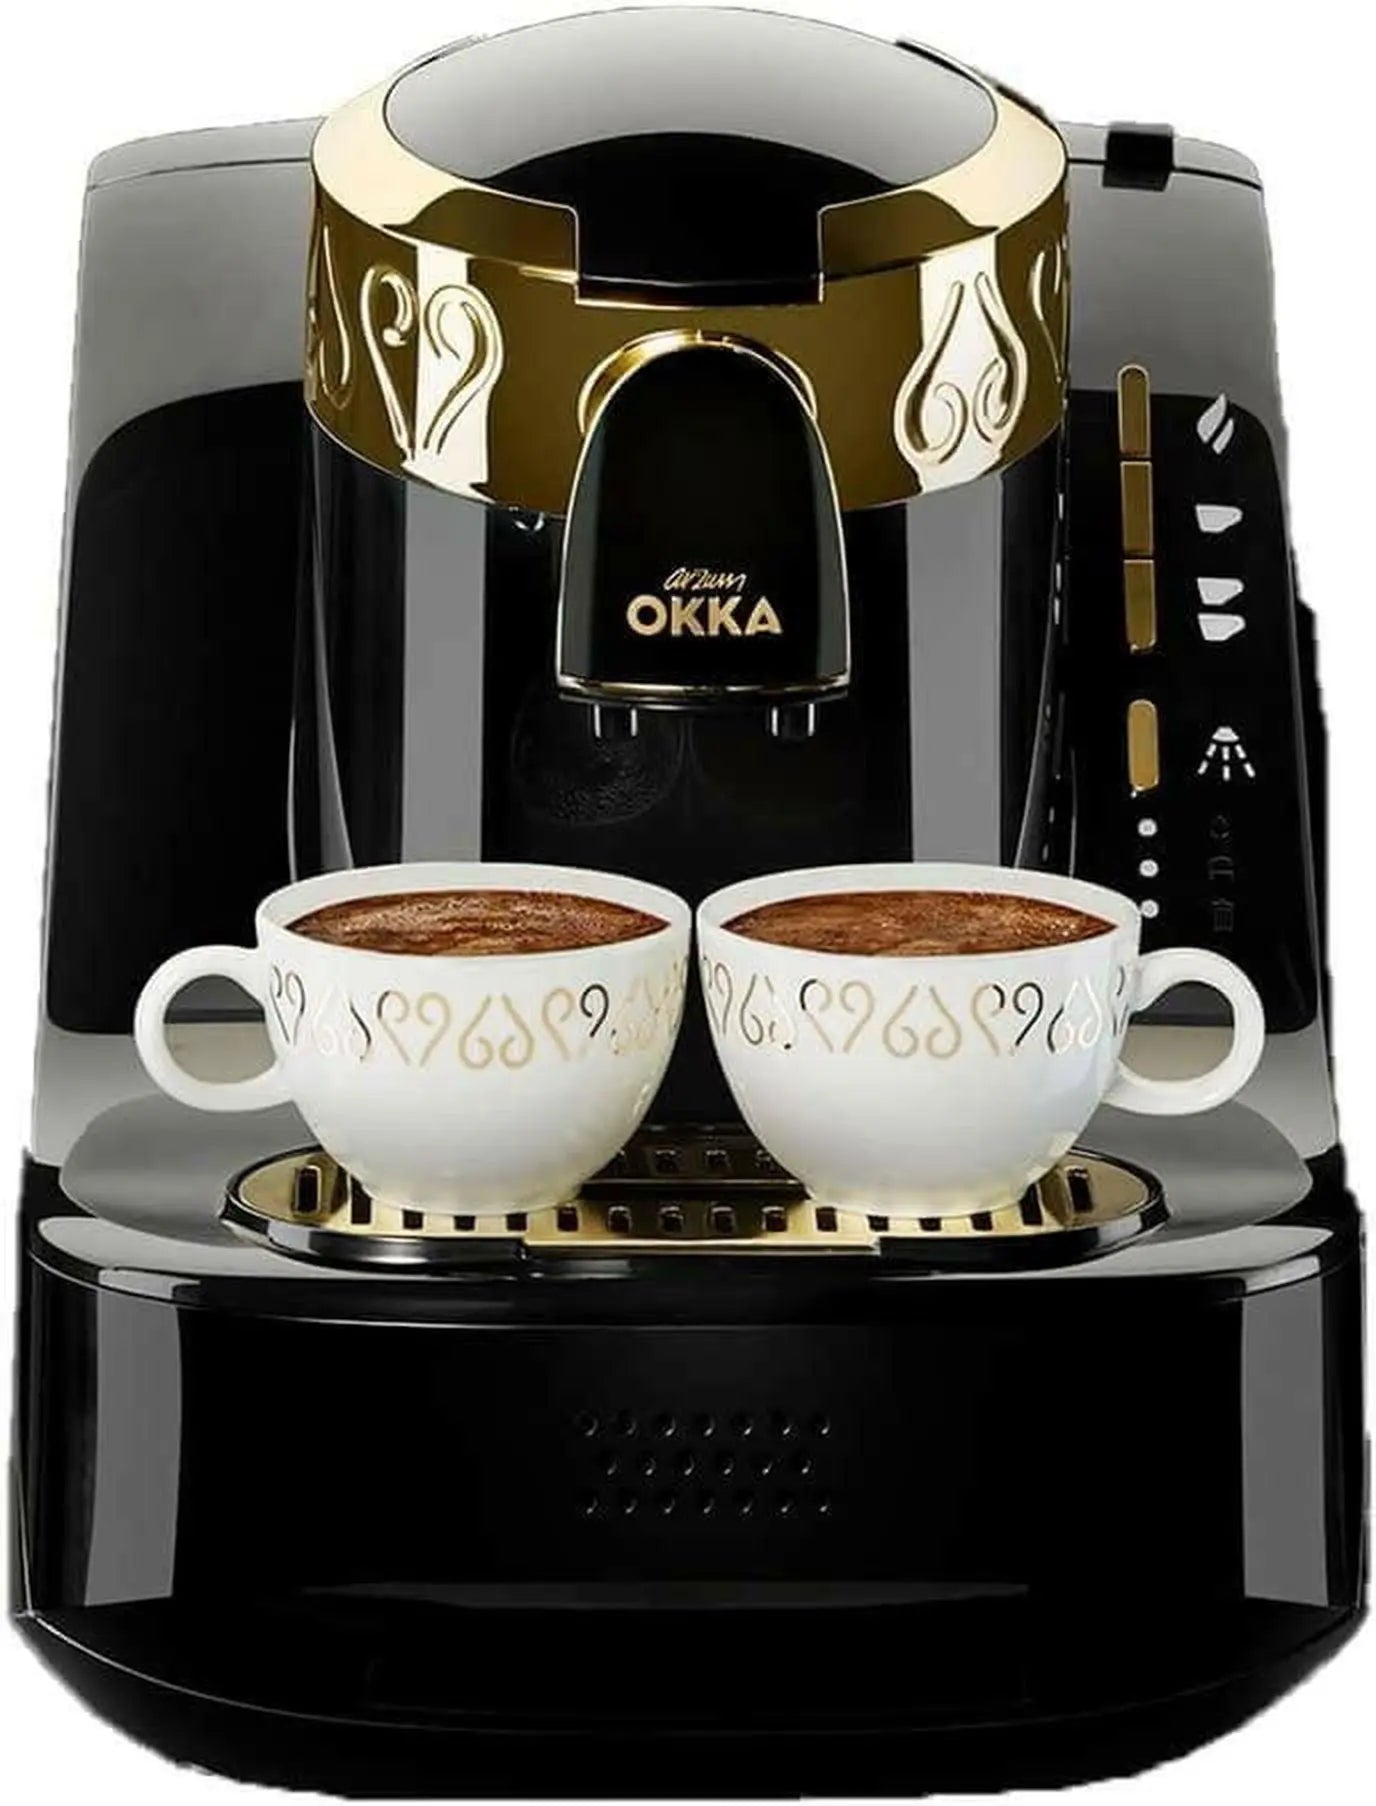 Arzum Okka - Turkish Coffee Machine 950Ml - Black/Gold - OK008